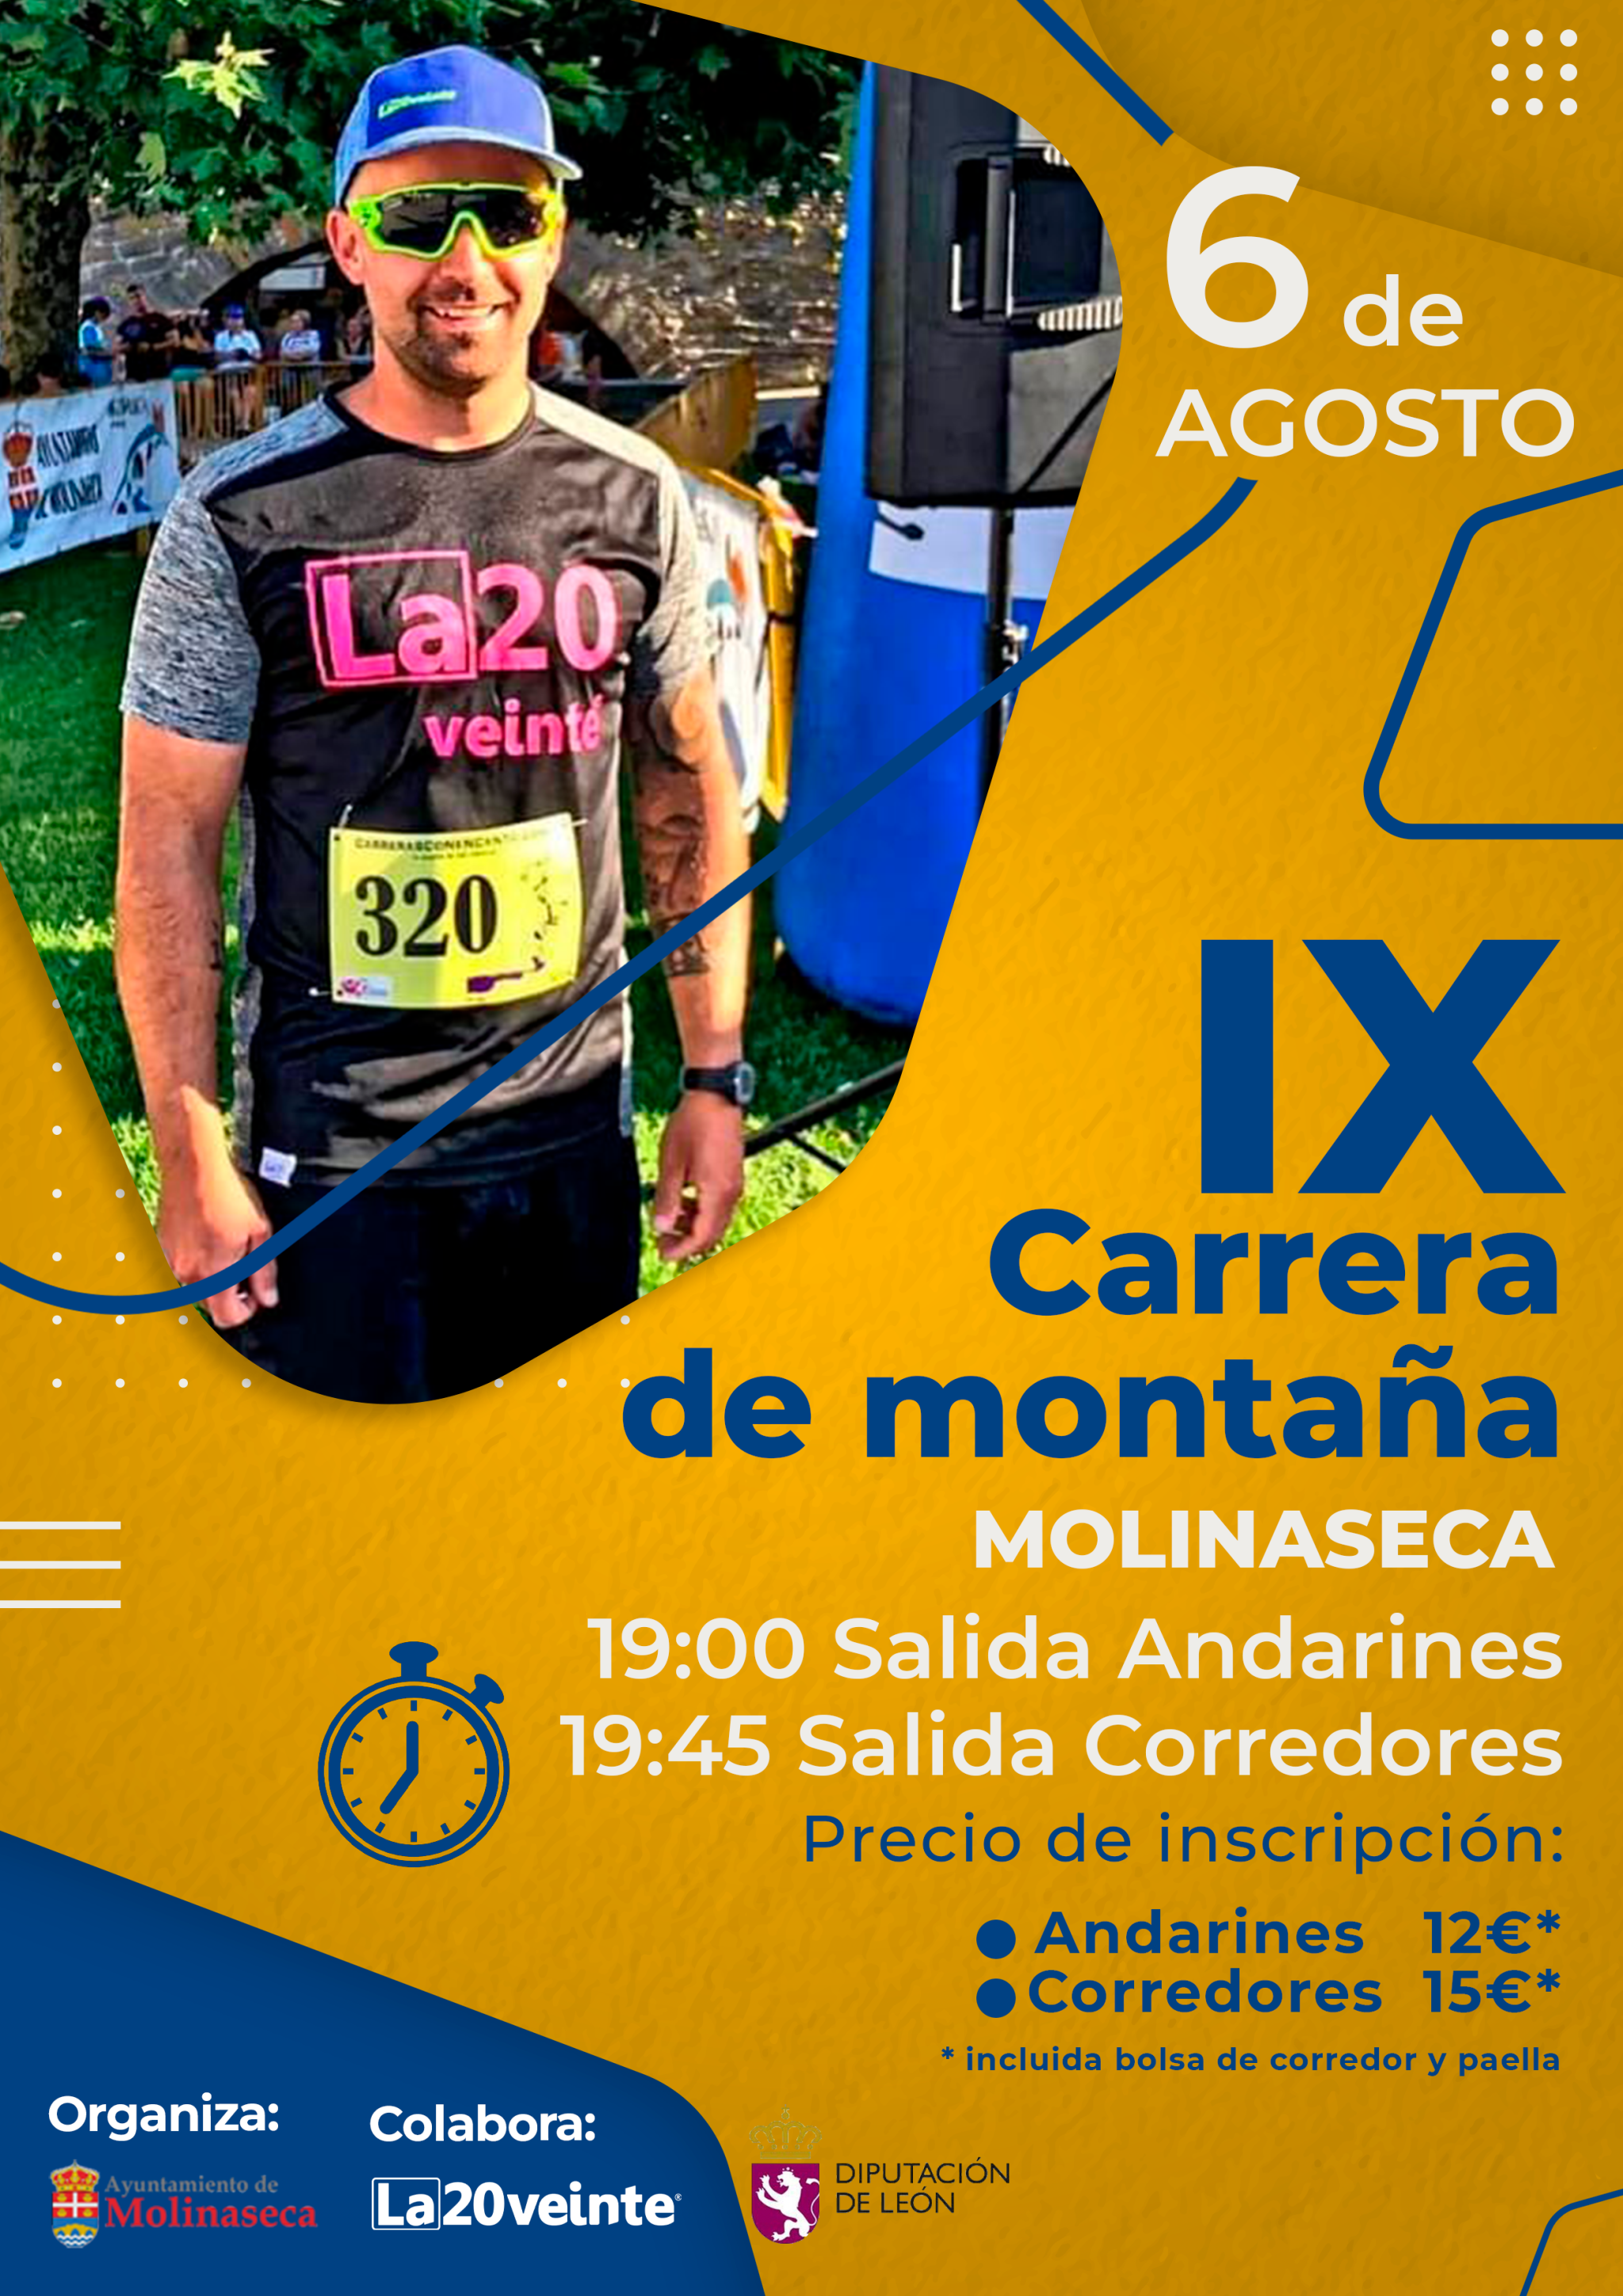 Vuelve la IX edición de la Carrera de montaña Molinaseca organizada por el Ayuntamiento, en colaboración con el club La20veinte 2